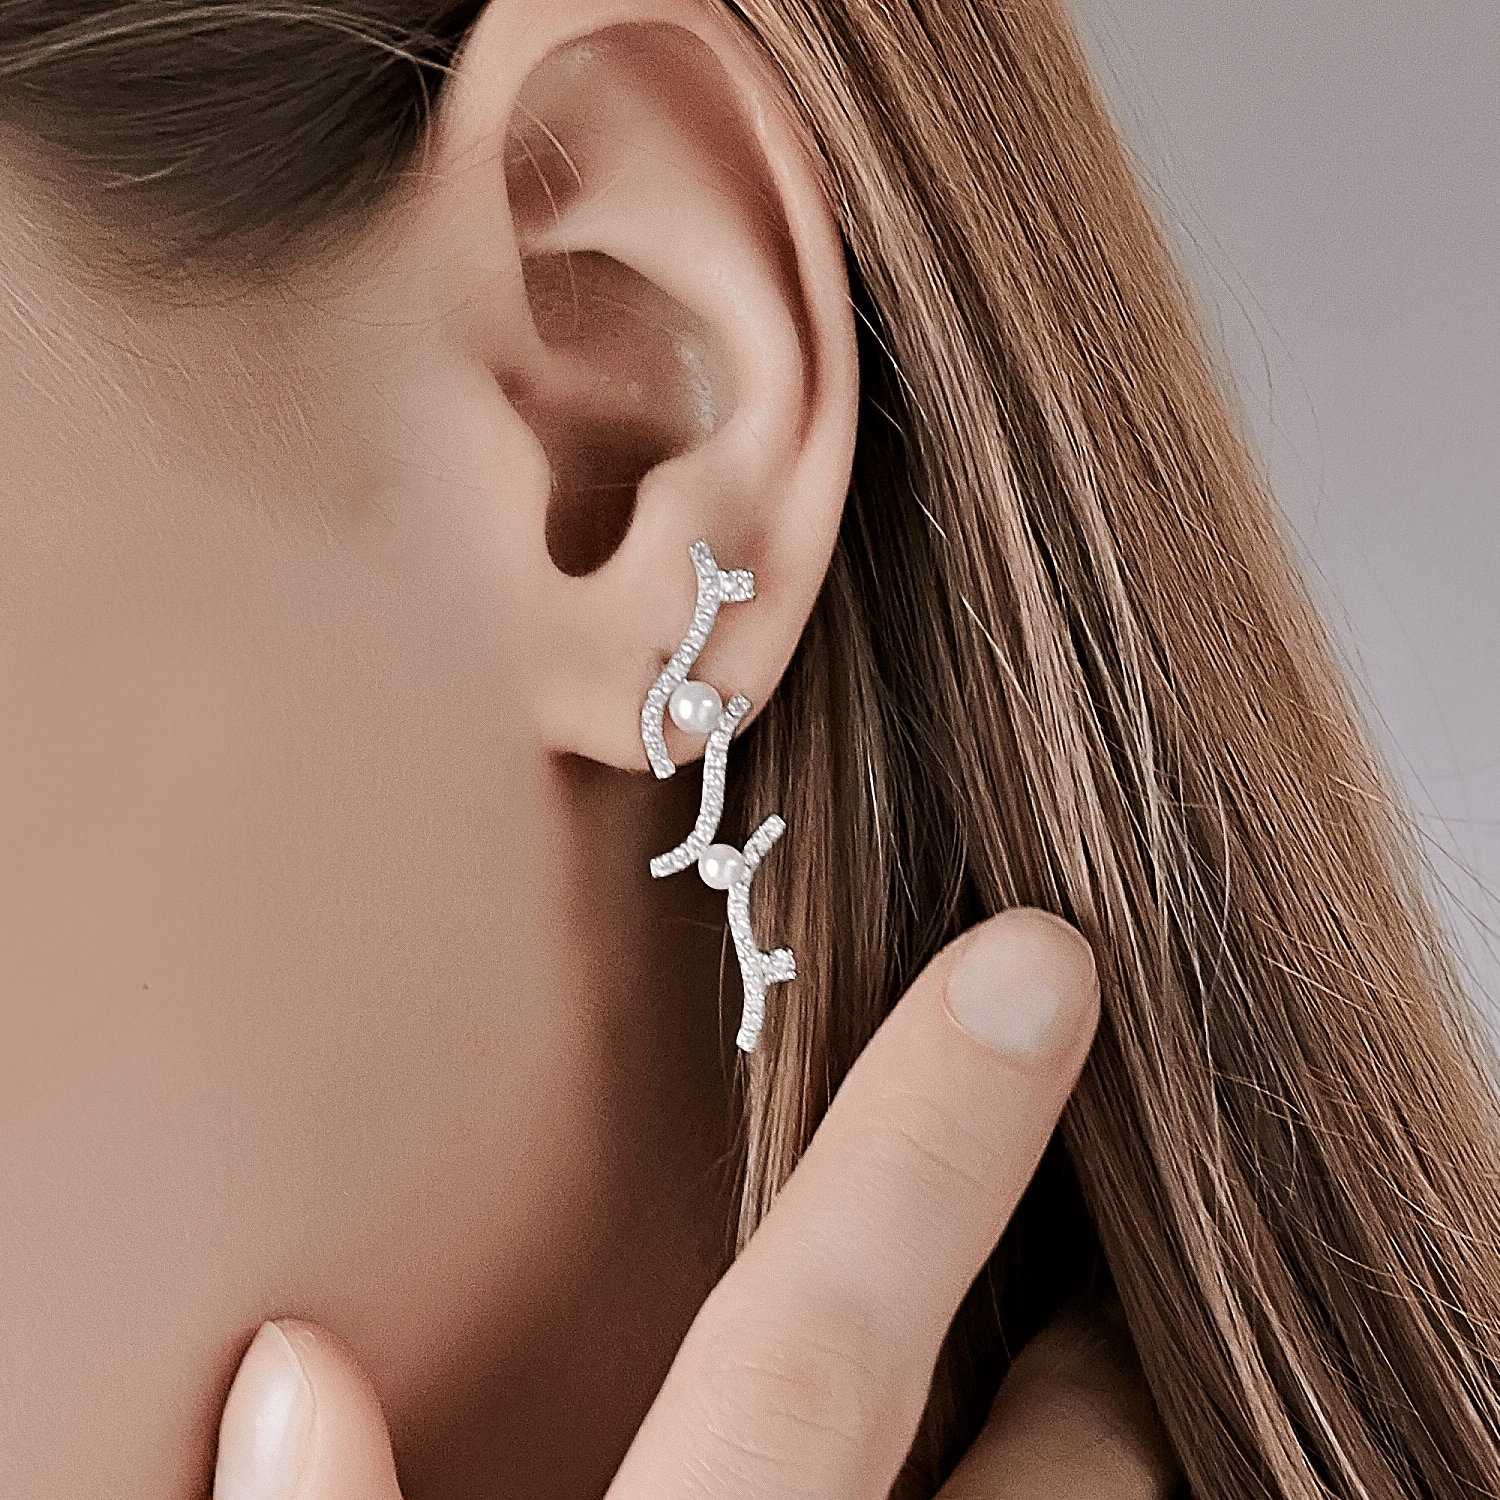 Coral Stud Earrings